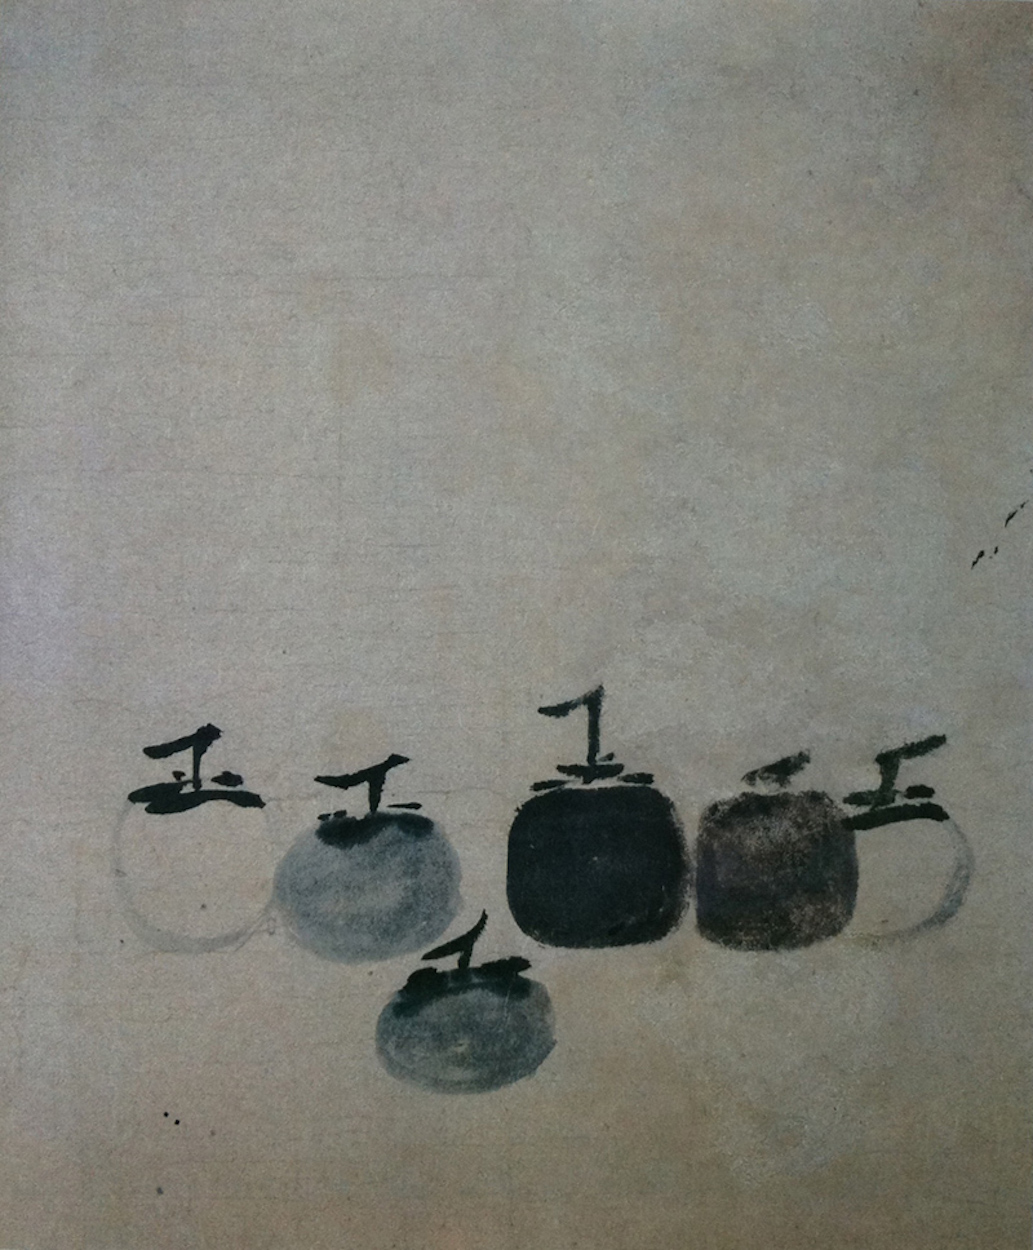 ست حبات كاكي - Six Persimmons by Muxi Fachang - القرن 13 - 36.2 × 38.1 سم 